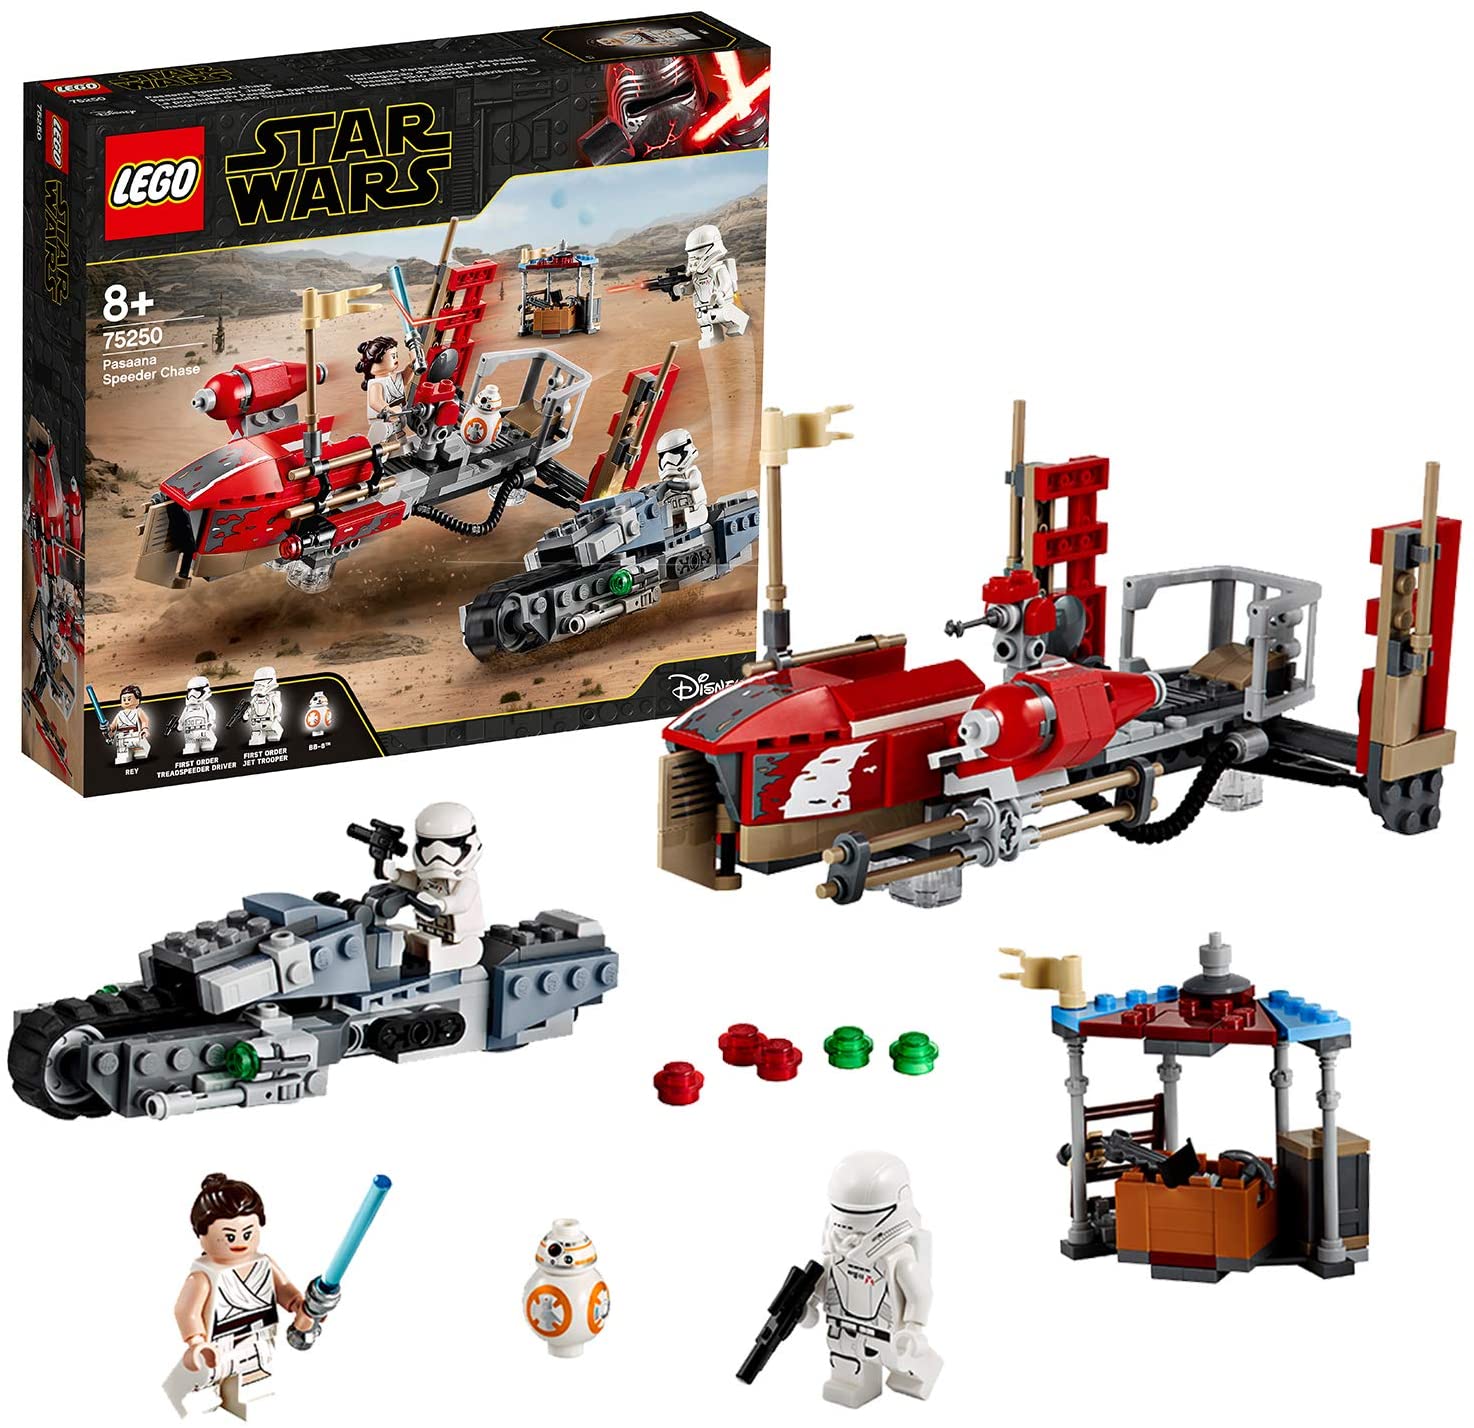 LEGO 75250 Star Wars Pasaana Speeder Chase Treadspeeder Vehicle Building Set, The Rise Skywalker – TopToy